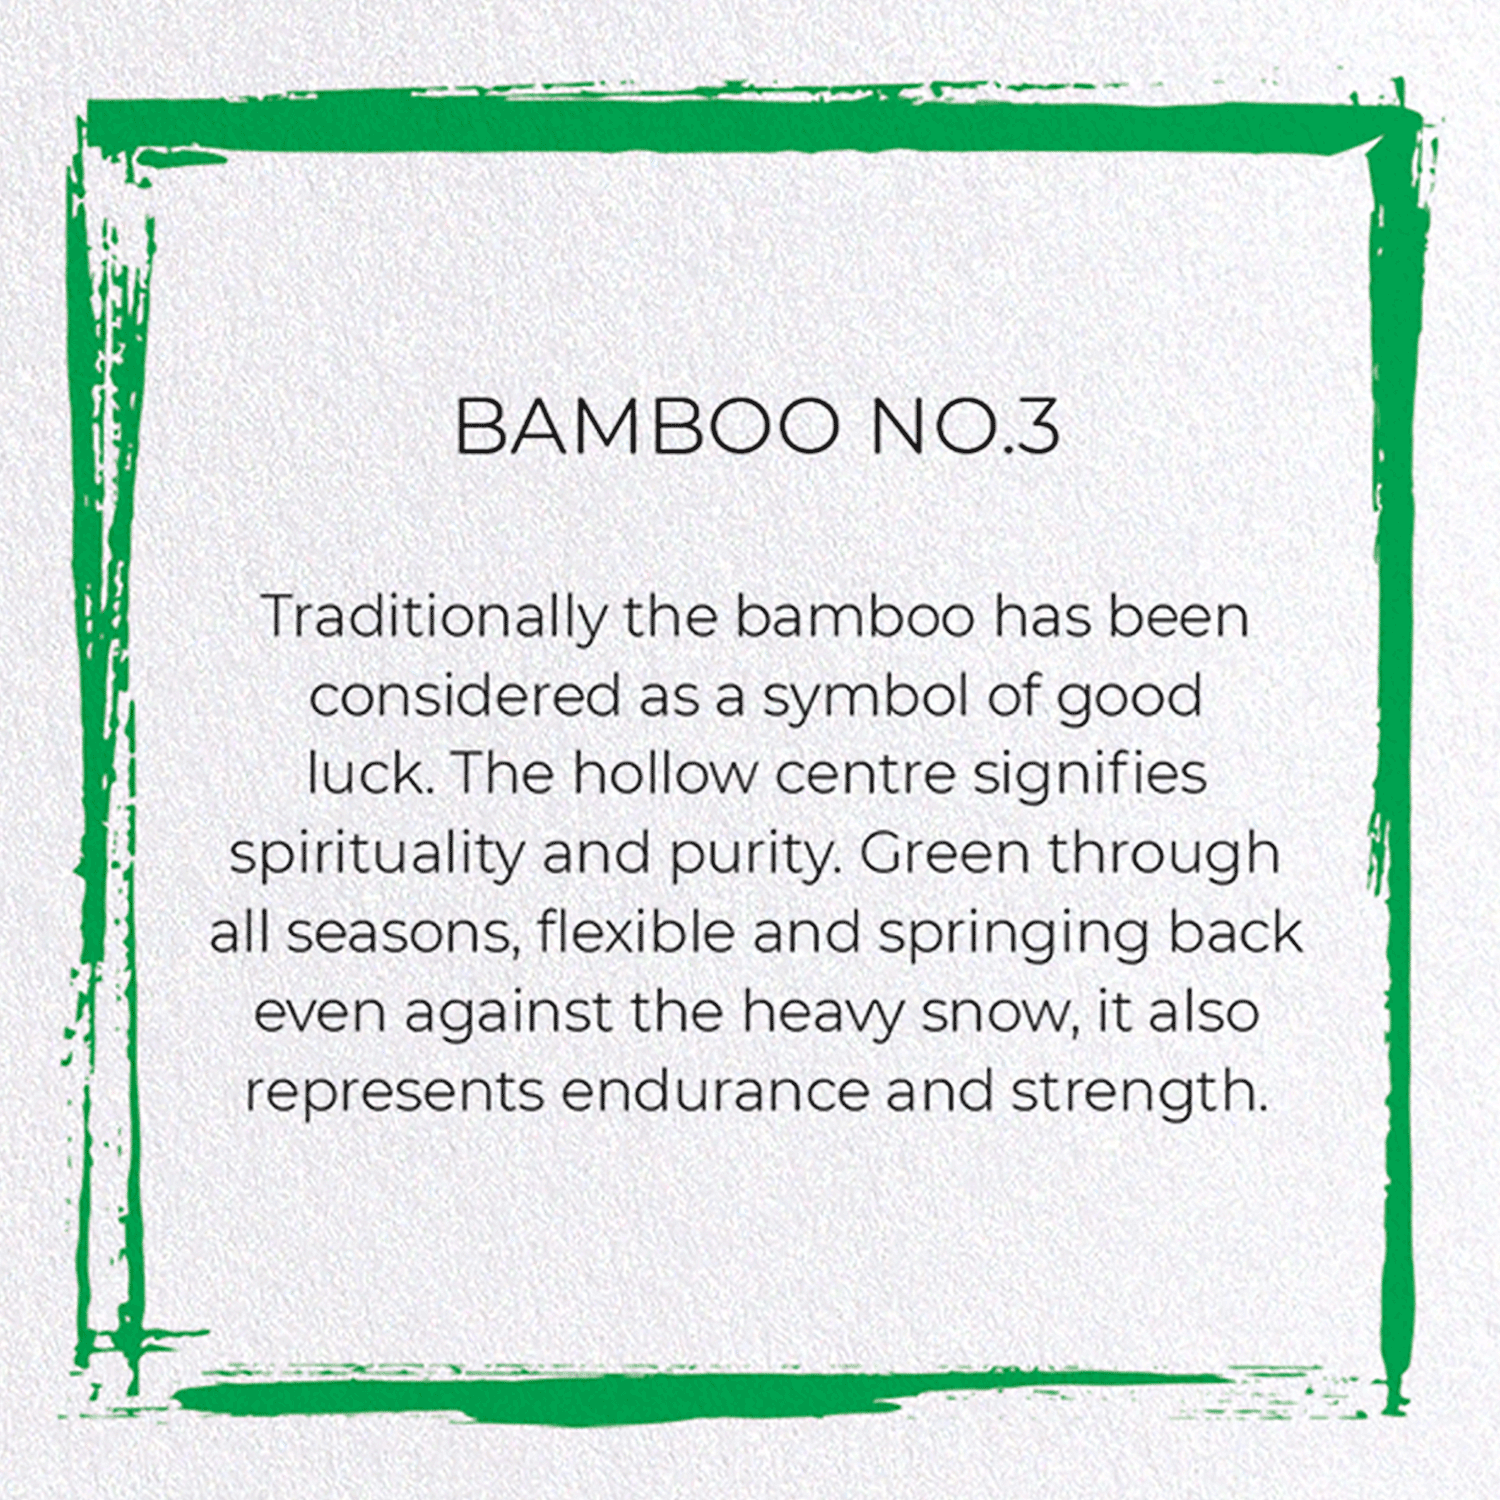 BAMBOO NO.3